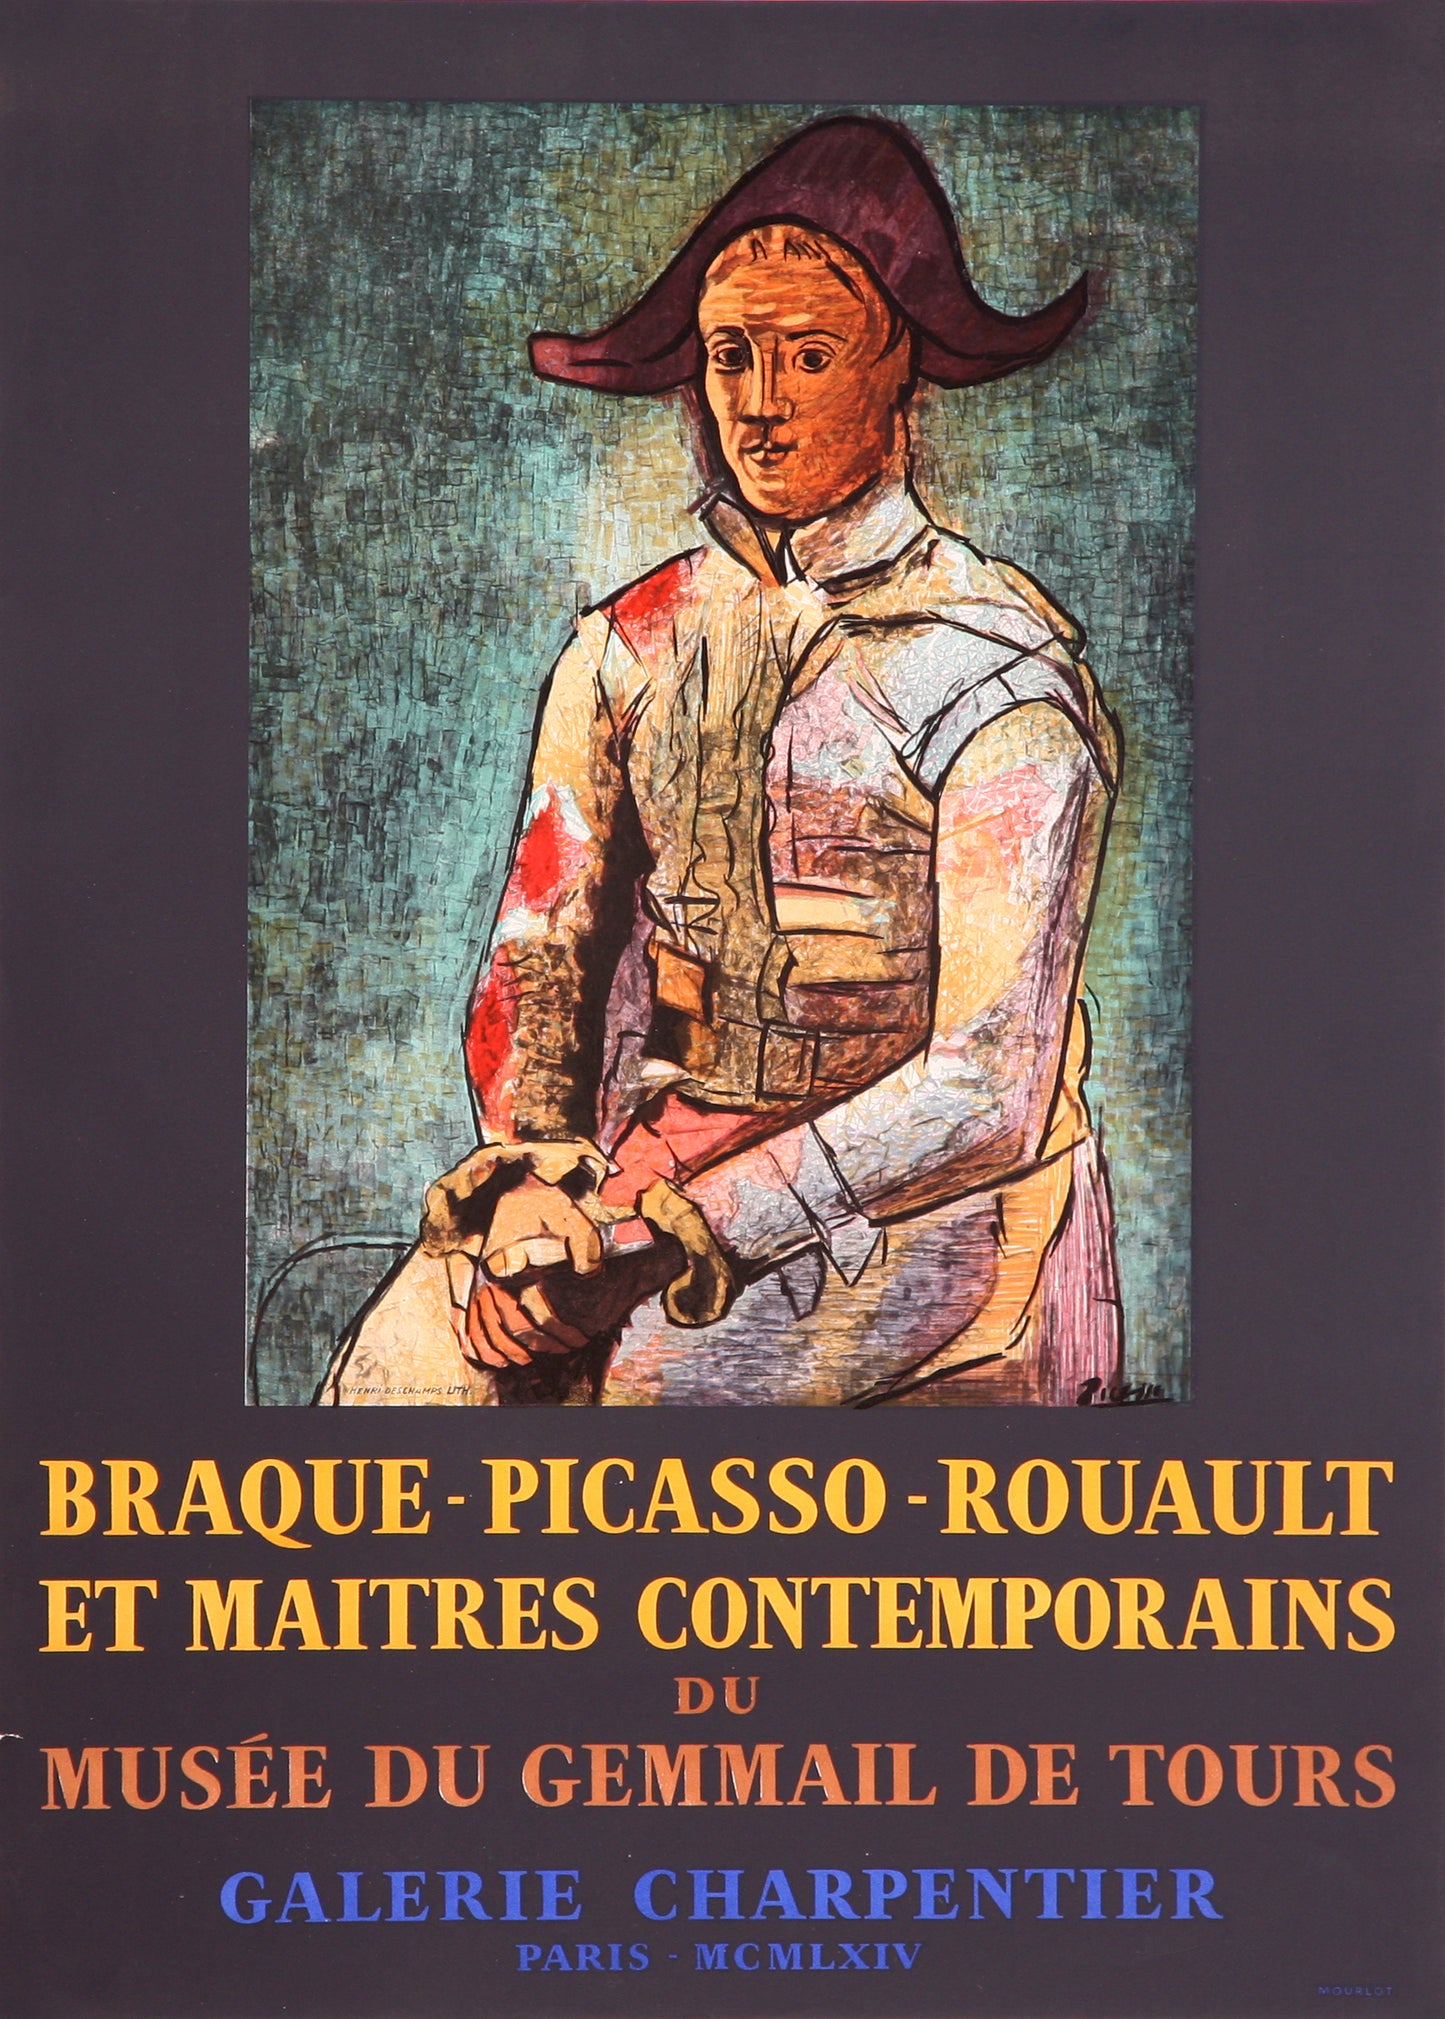 Arlequin Assis - Musée du Gemmail de Tours (after) Pablo Picasso, 1964 - Mourlot Editions - Fine_Art - Poster - Lithograph - Wall Art - Vintage - Prints - Original